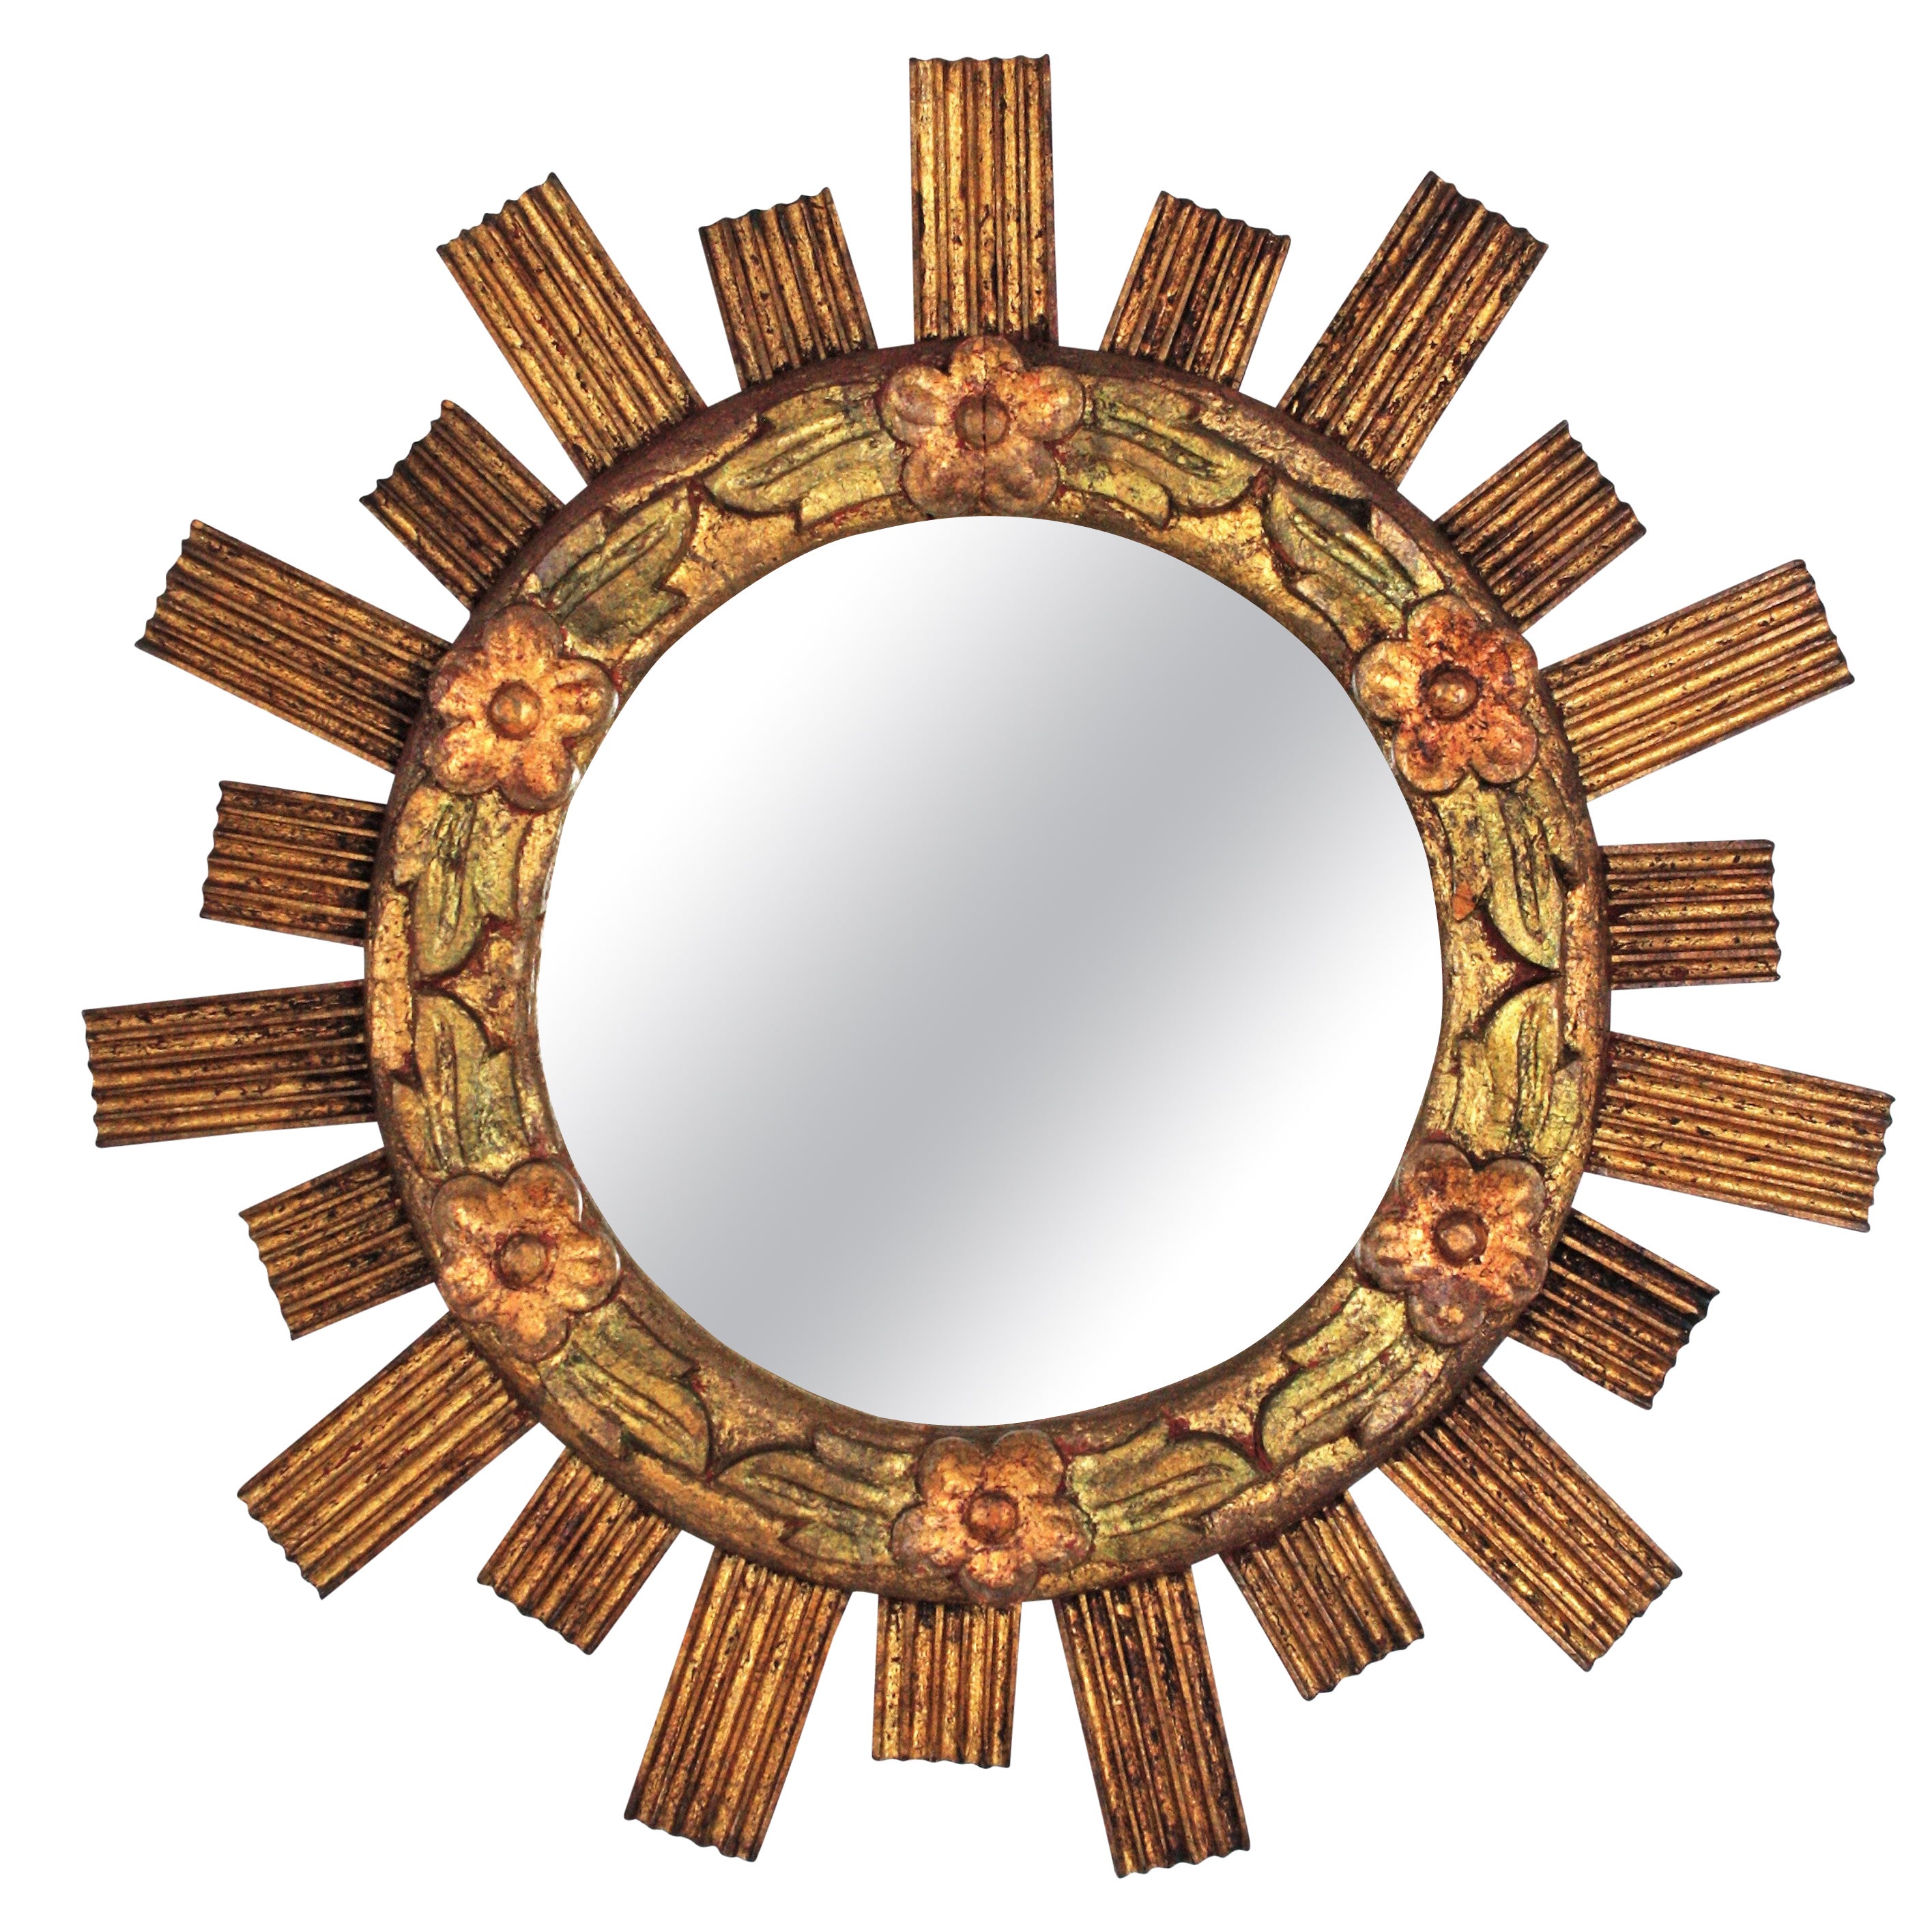 Miroir espagnol Sunburst en bois doré avec détails floraux